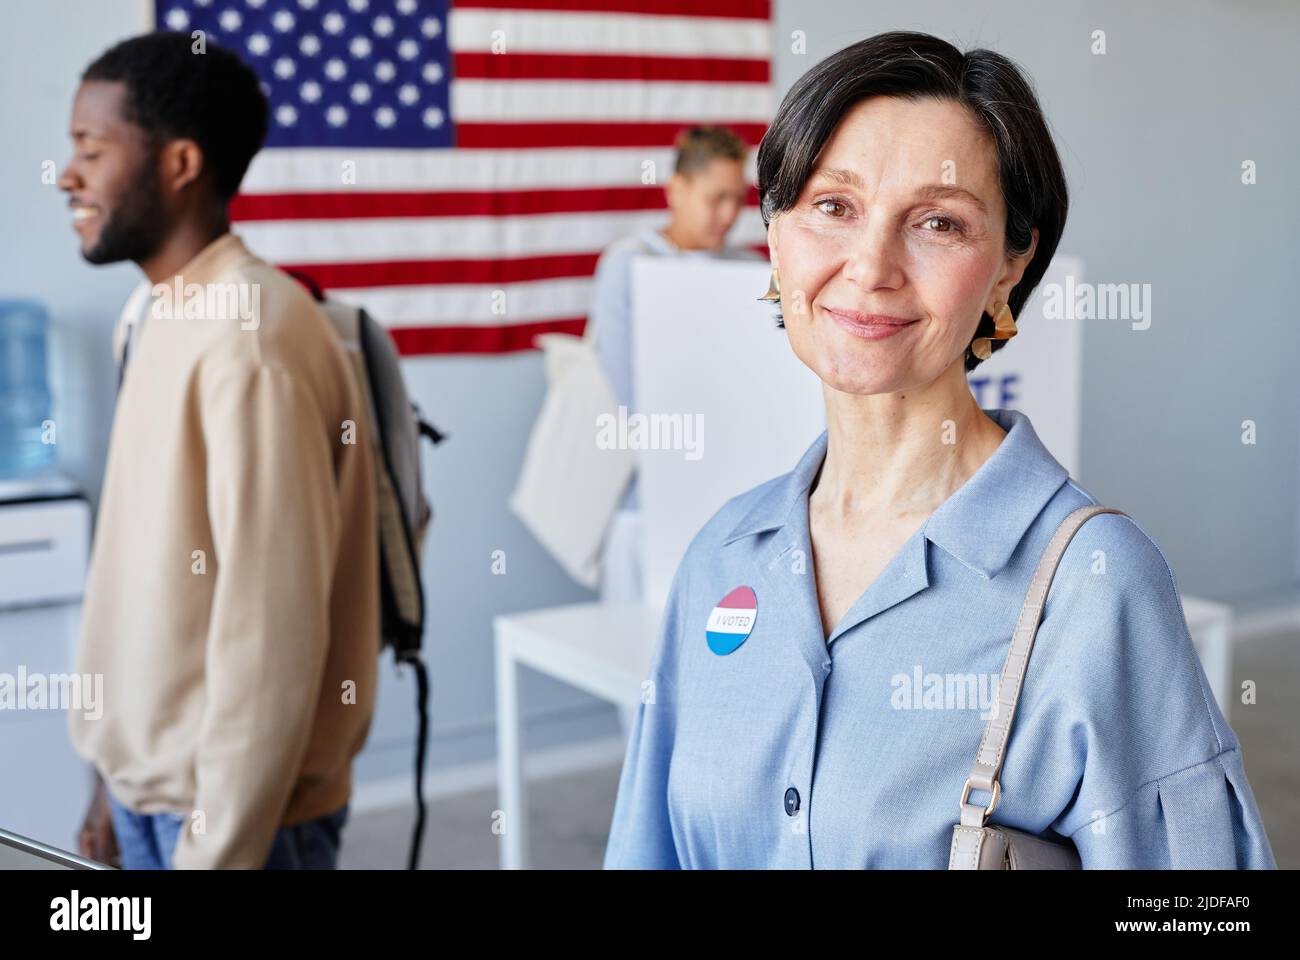 Porträt einer lächelnden erwachsenen Frau an der Wahlstation, die mit der amerikanischen Flagge im Hintergrund und dem Kopierbereich lächelt Stockfoto